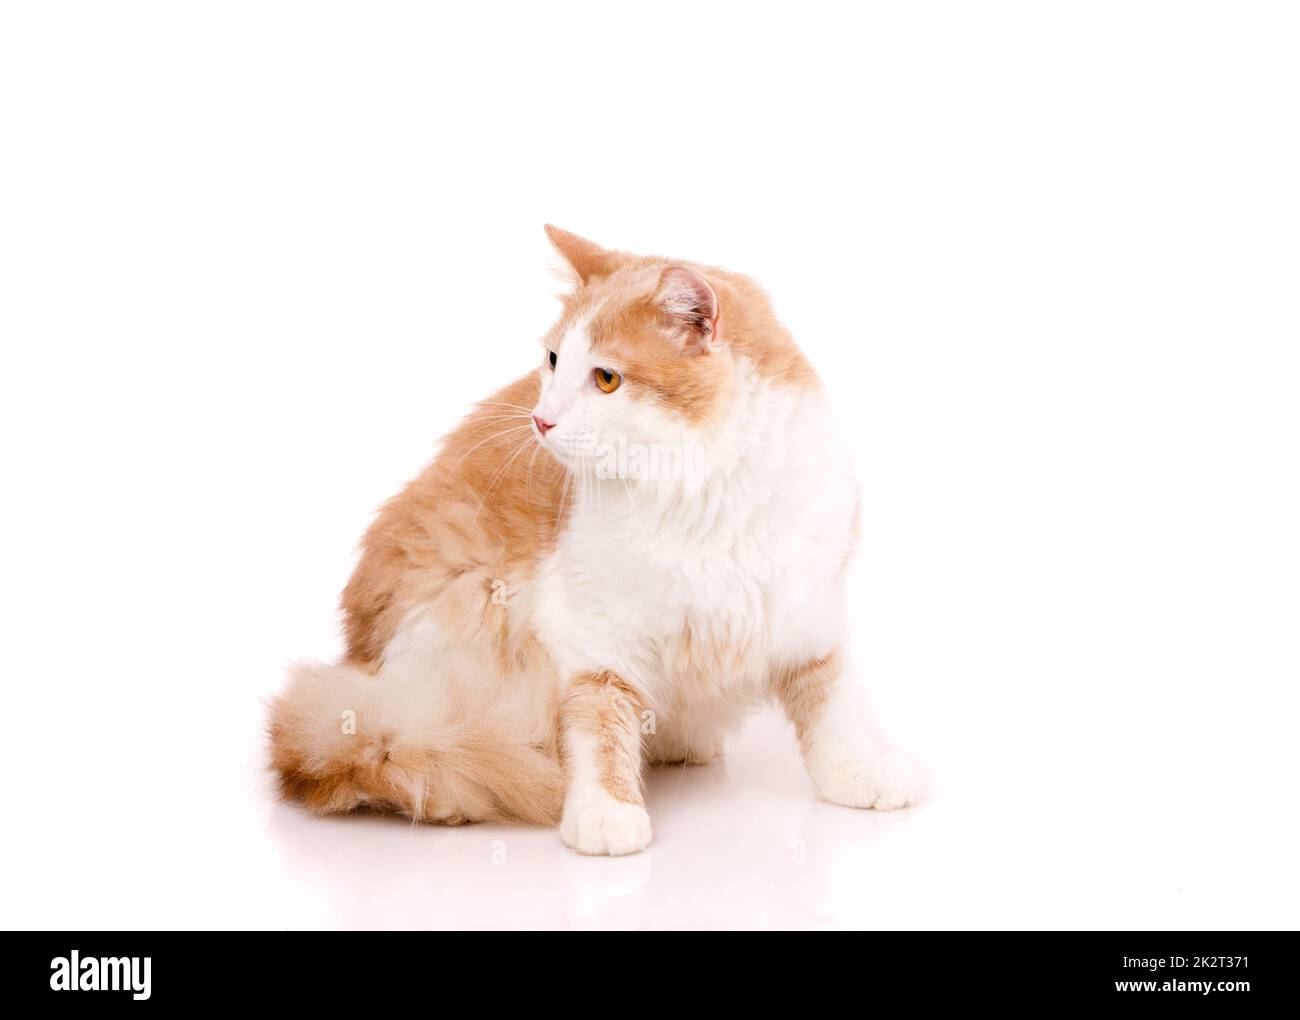 Große Katze mit rotem und weißem Fell sitzt auf weißem Hintergrund und sieht an der Seite merkwürdig aus. Stockfoto